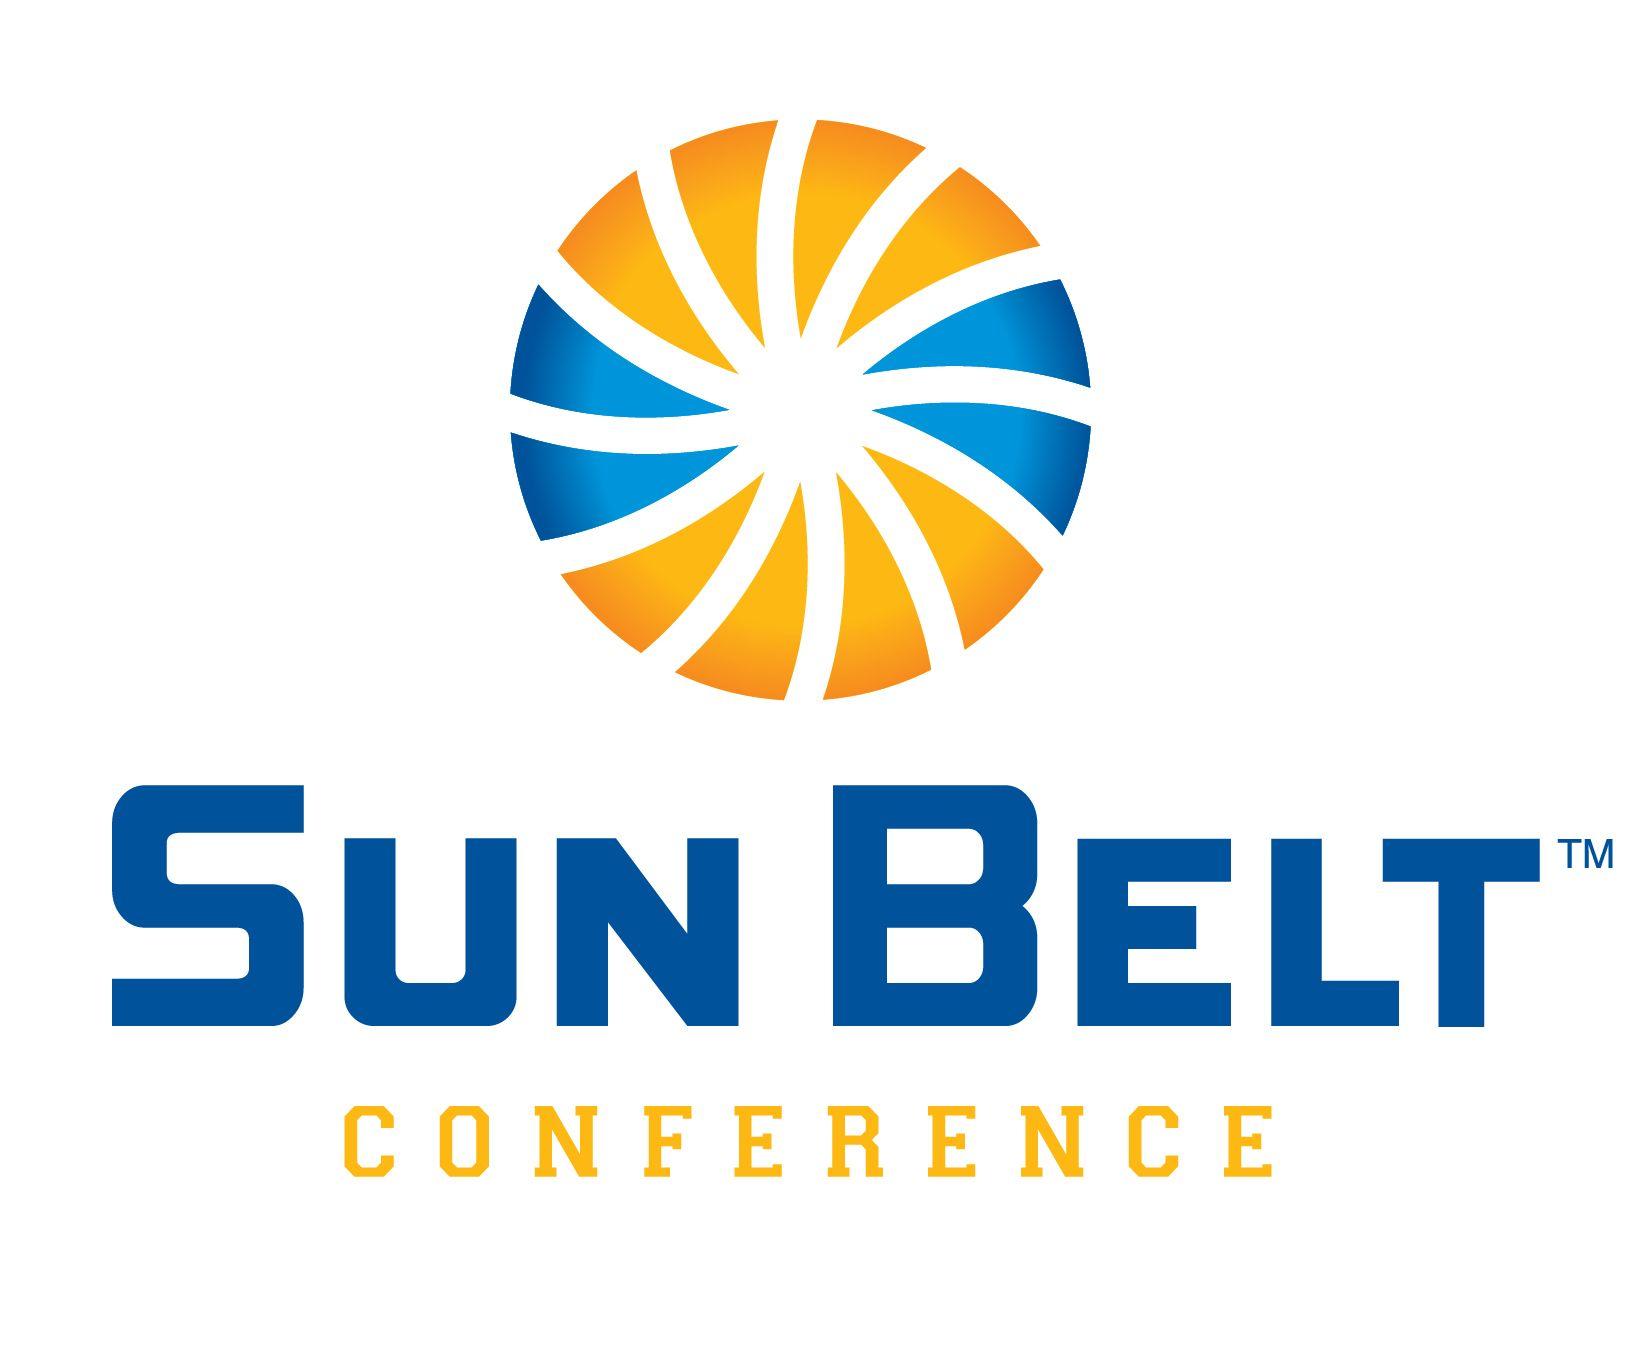 Sunbelt Logo - Logos Belt Conference